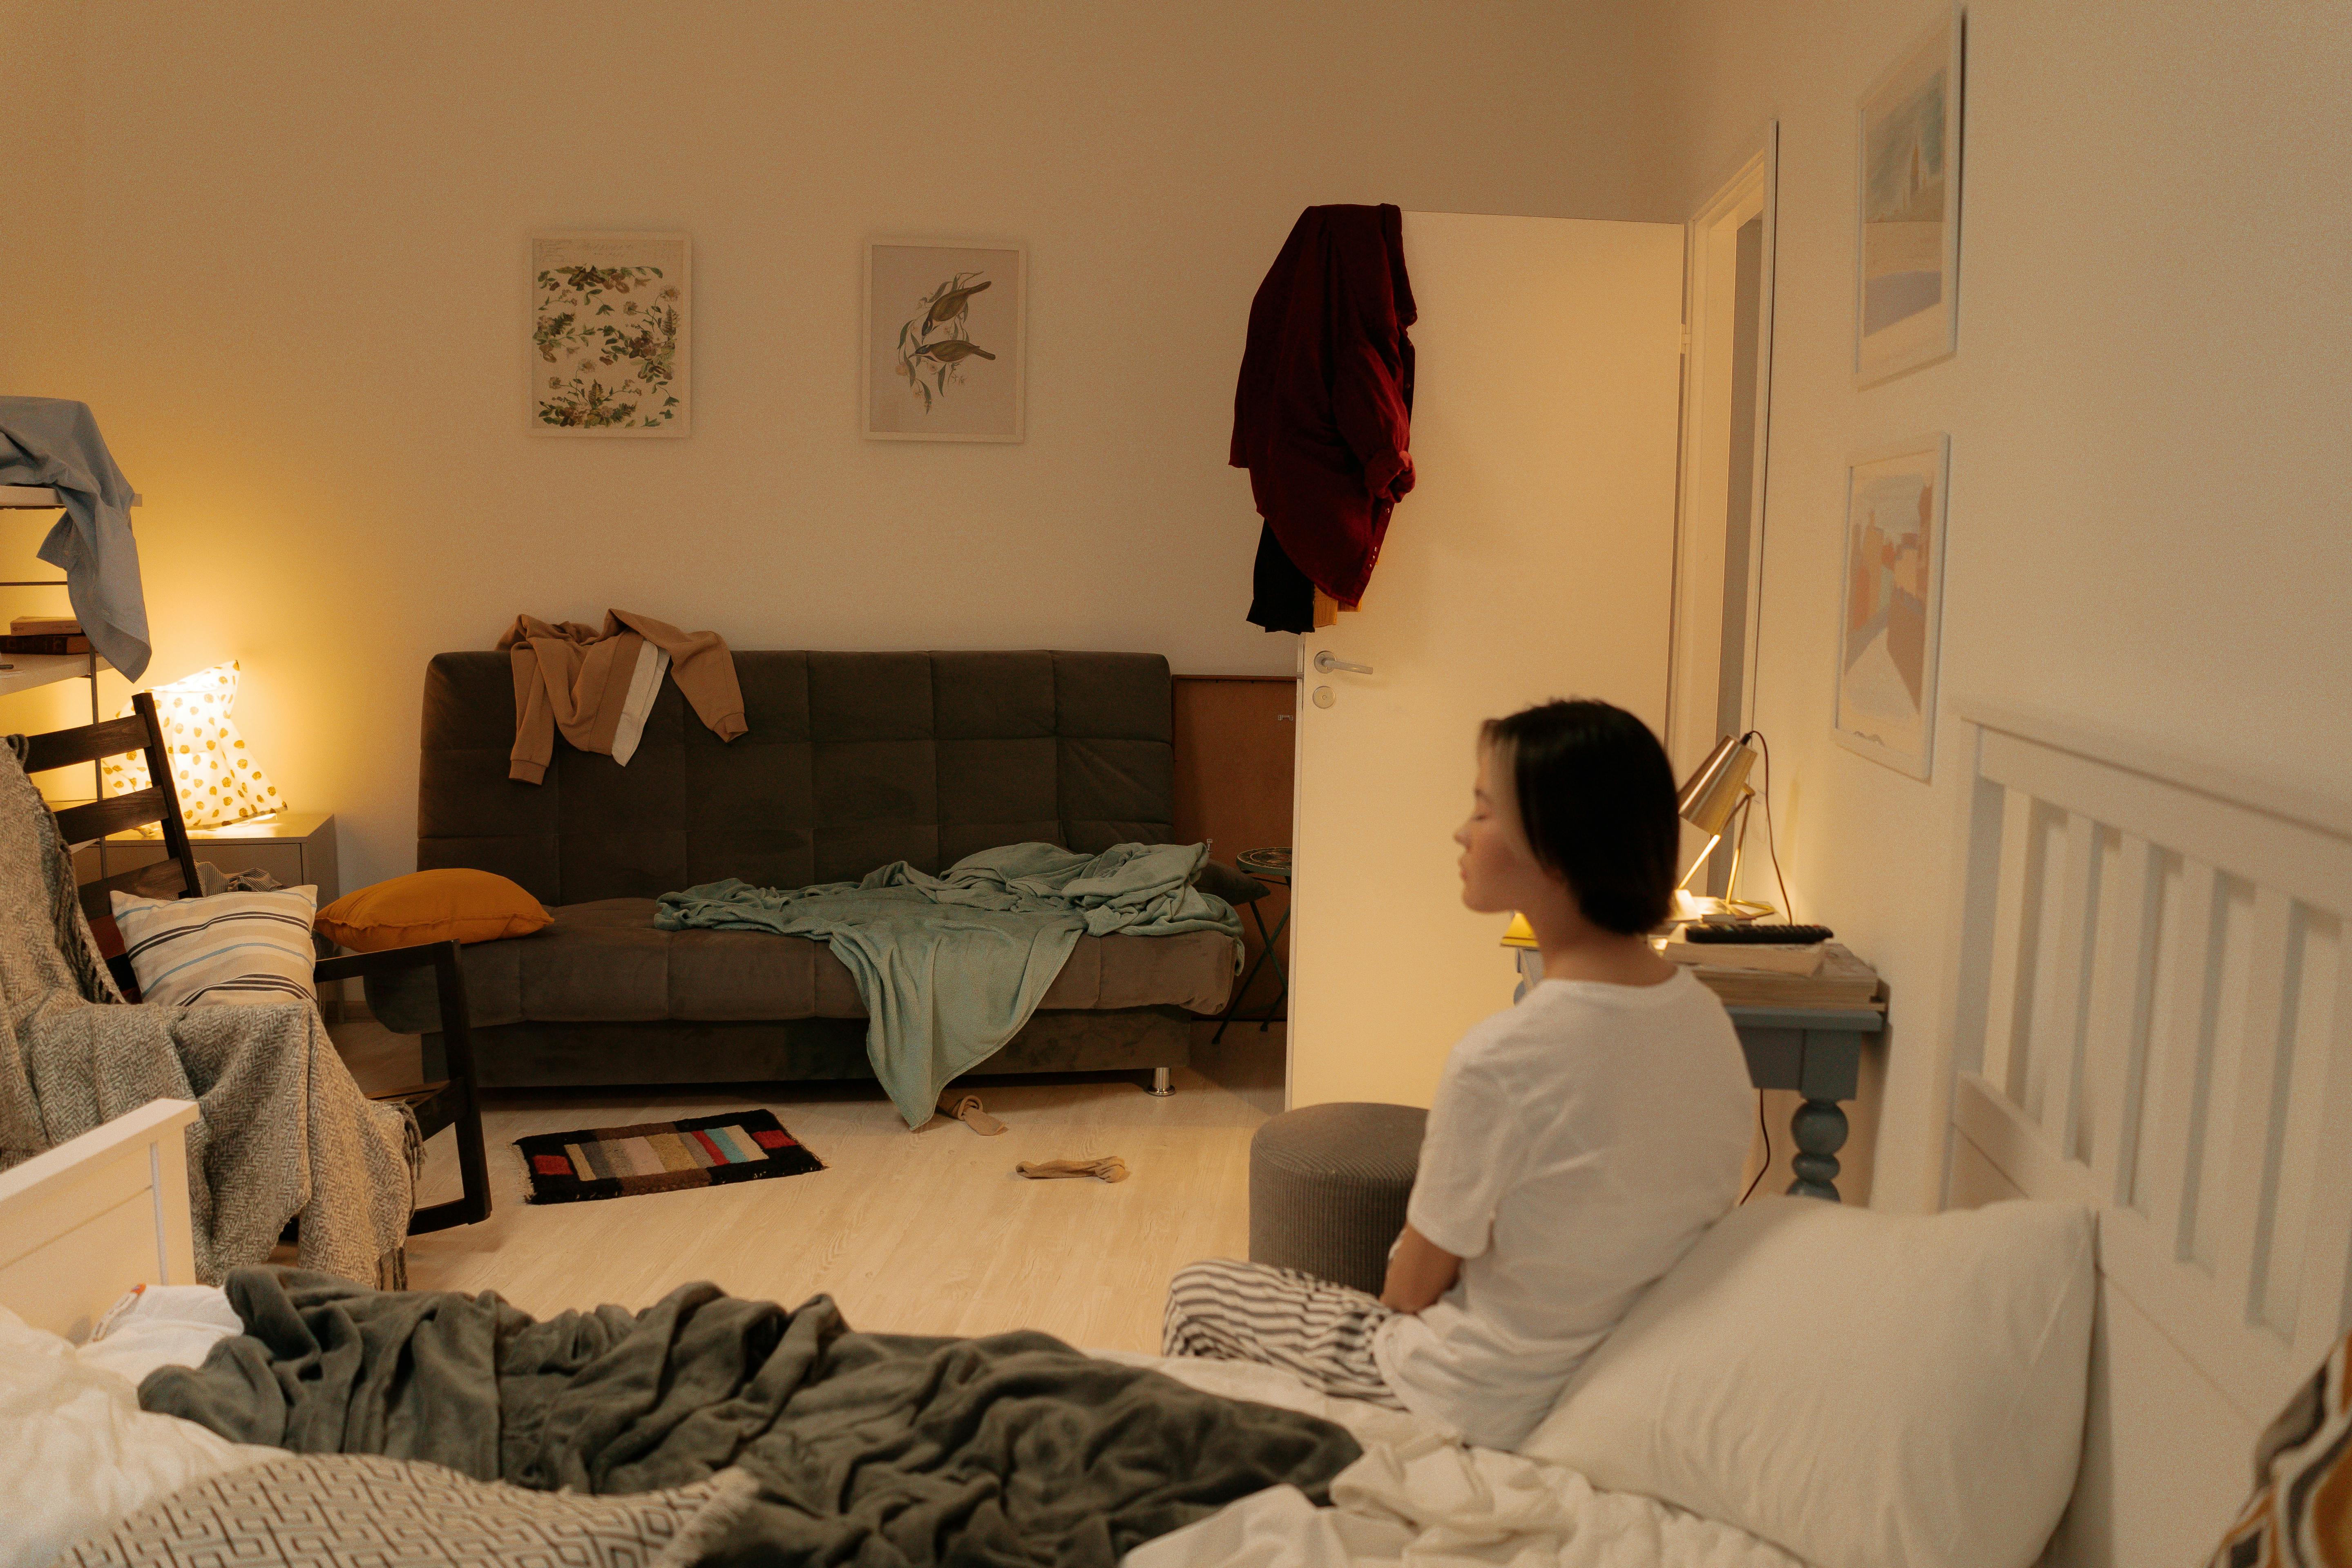 Une chambre à coucher en désordre avec une femme assise sur le lit | Source : Pexels